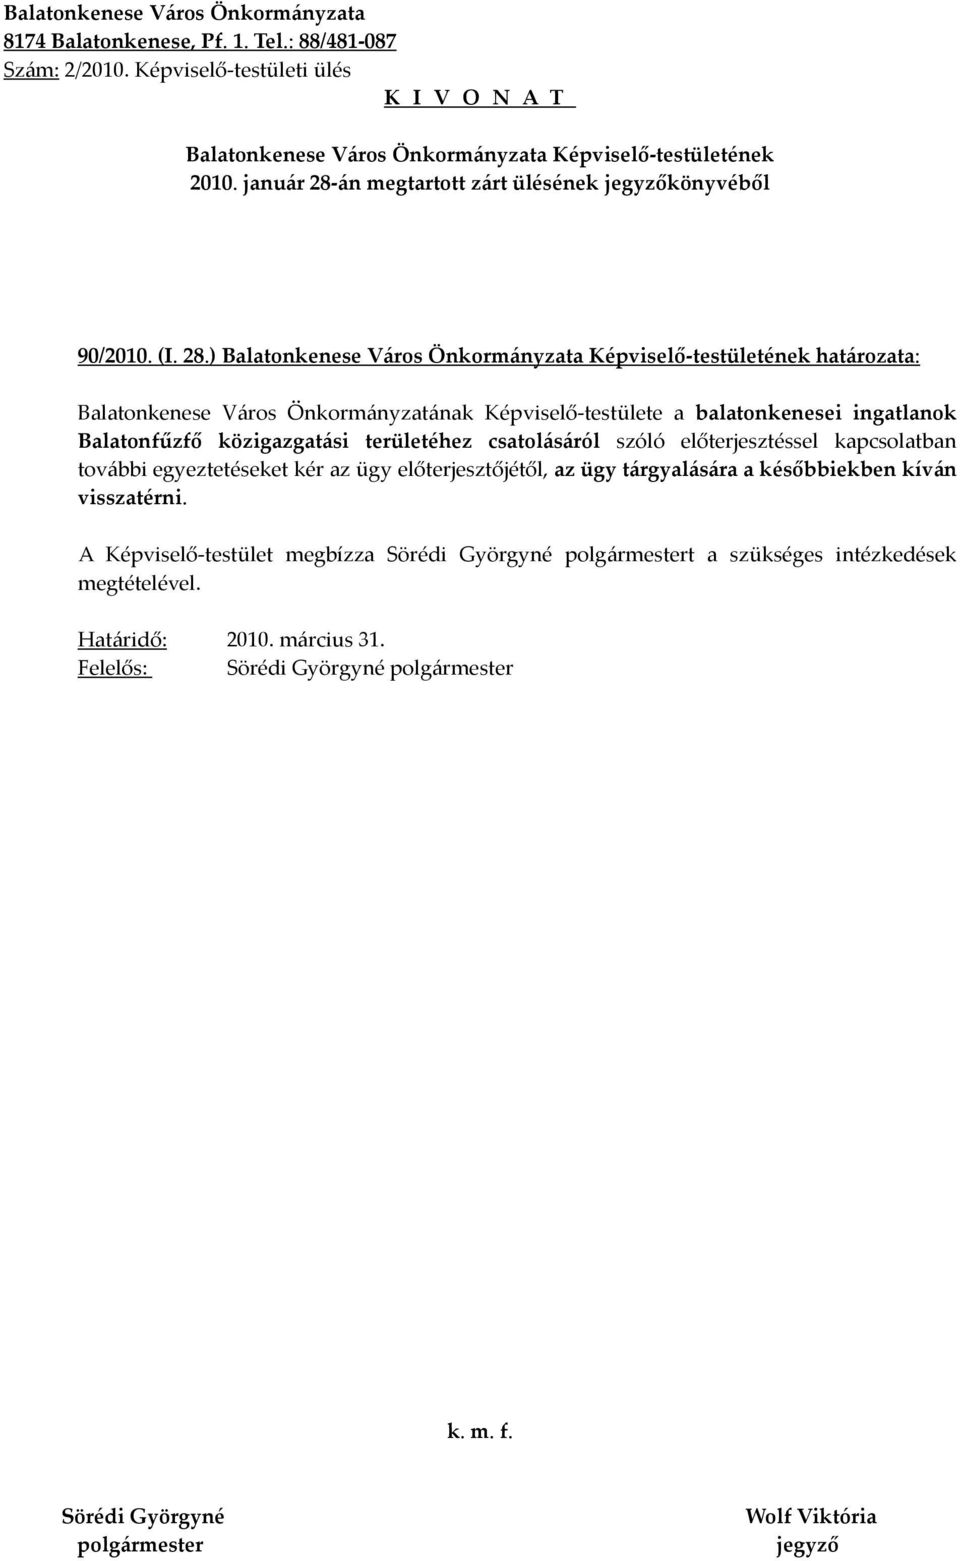 ) határozata: Balatonkenese Város Önkormányzatának Képviselő-testülete a balatonkenesei ingatlanok Balatonfűzfő